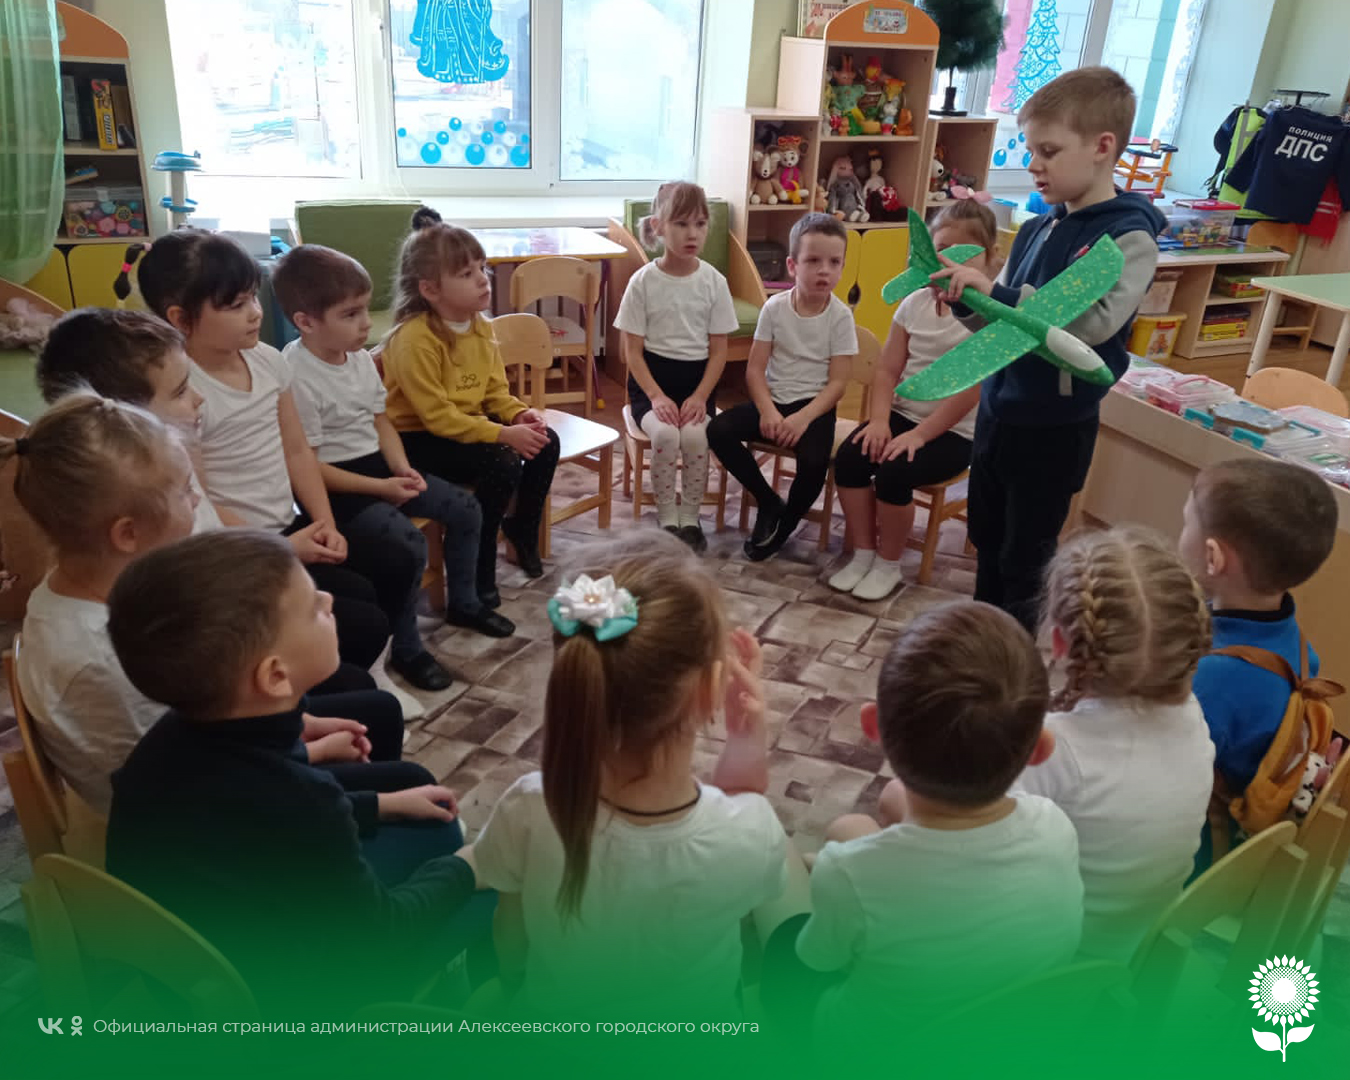 В детских садах Алексеевского городского округа прошли мероприятия, посвященные Международному дню гражданской авиации